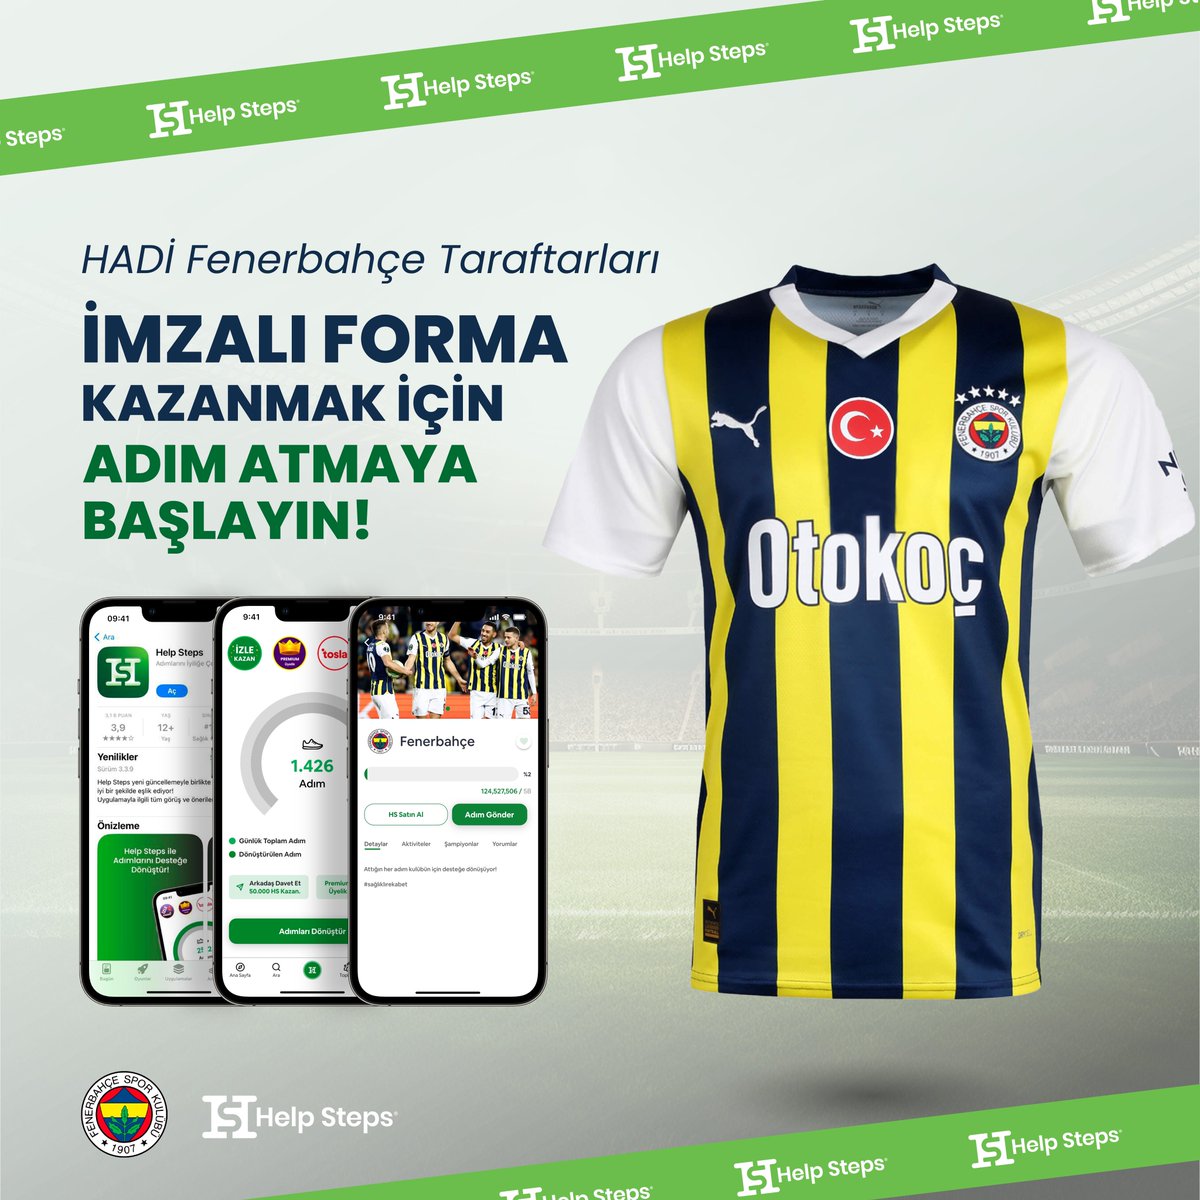 💛💙Hadi Fenerbahçe taraftarları, forma kazanmak için adım atmaya başlayın! 👟👕 Bu hafta, Fenerbahçe’ye en fazla adım gönderen taraftara imzalı forma hediye ediyoruz. Yaptığınız her adımla Fenerbahçe'ye destek olun ve forma kazanın! 💪🏻